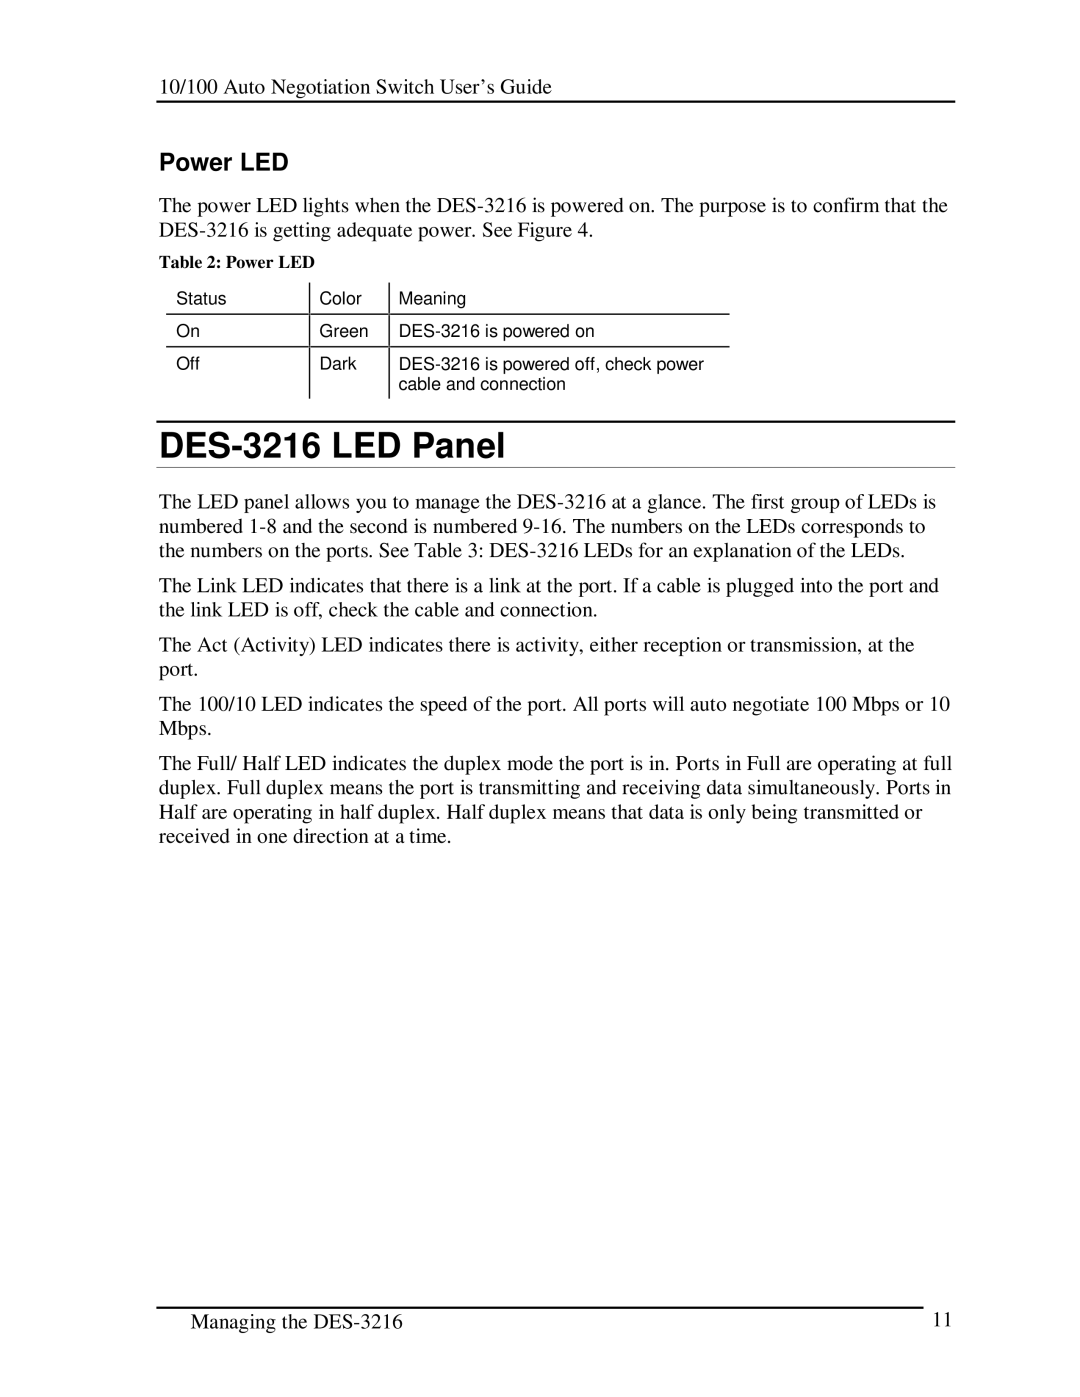 D-Link manual DES-3216 LED Panel, Power LED 